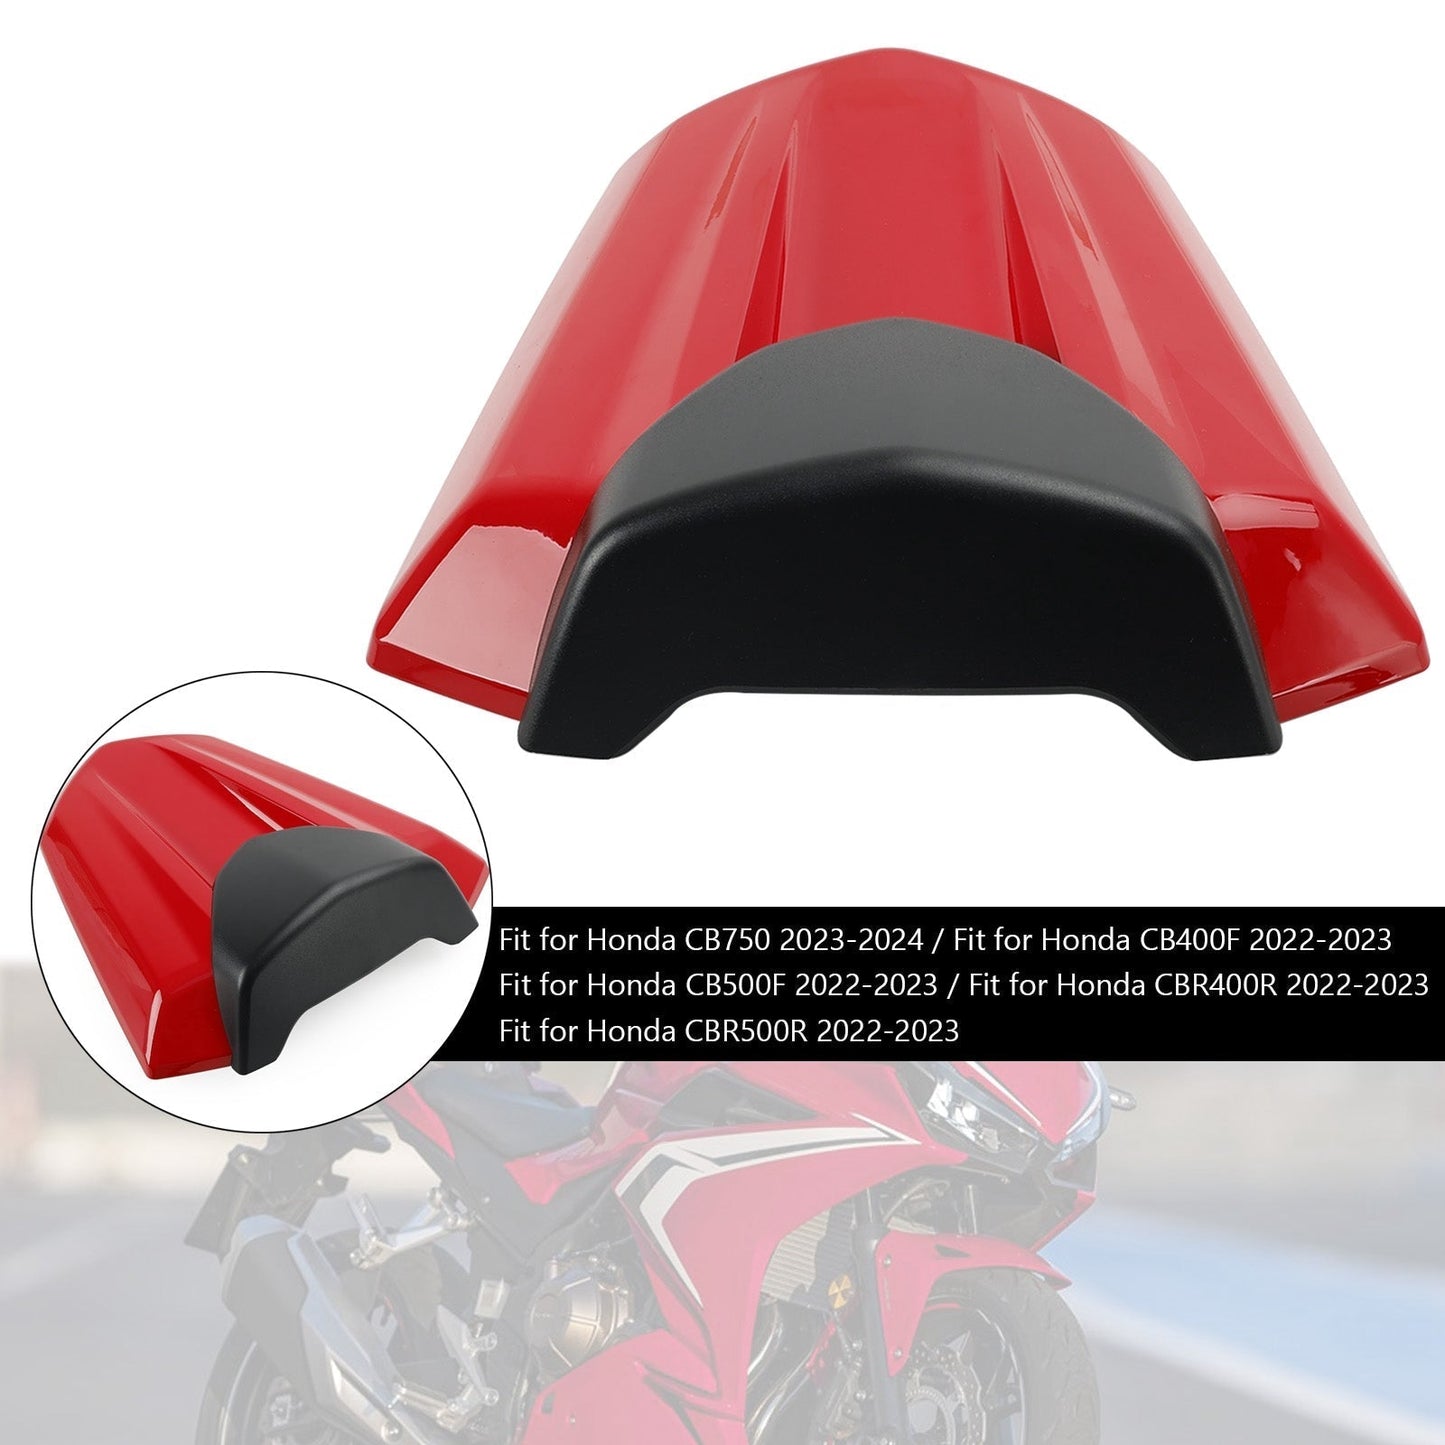 2022-2023 Honda CBR400R Rear Tail Seat Fairing Cover